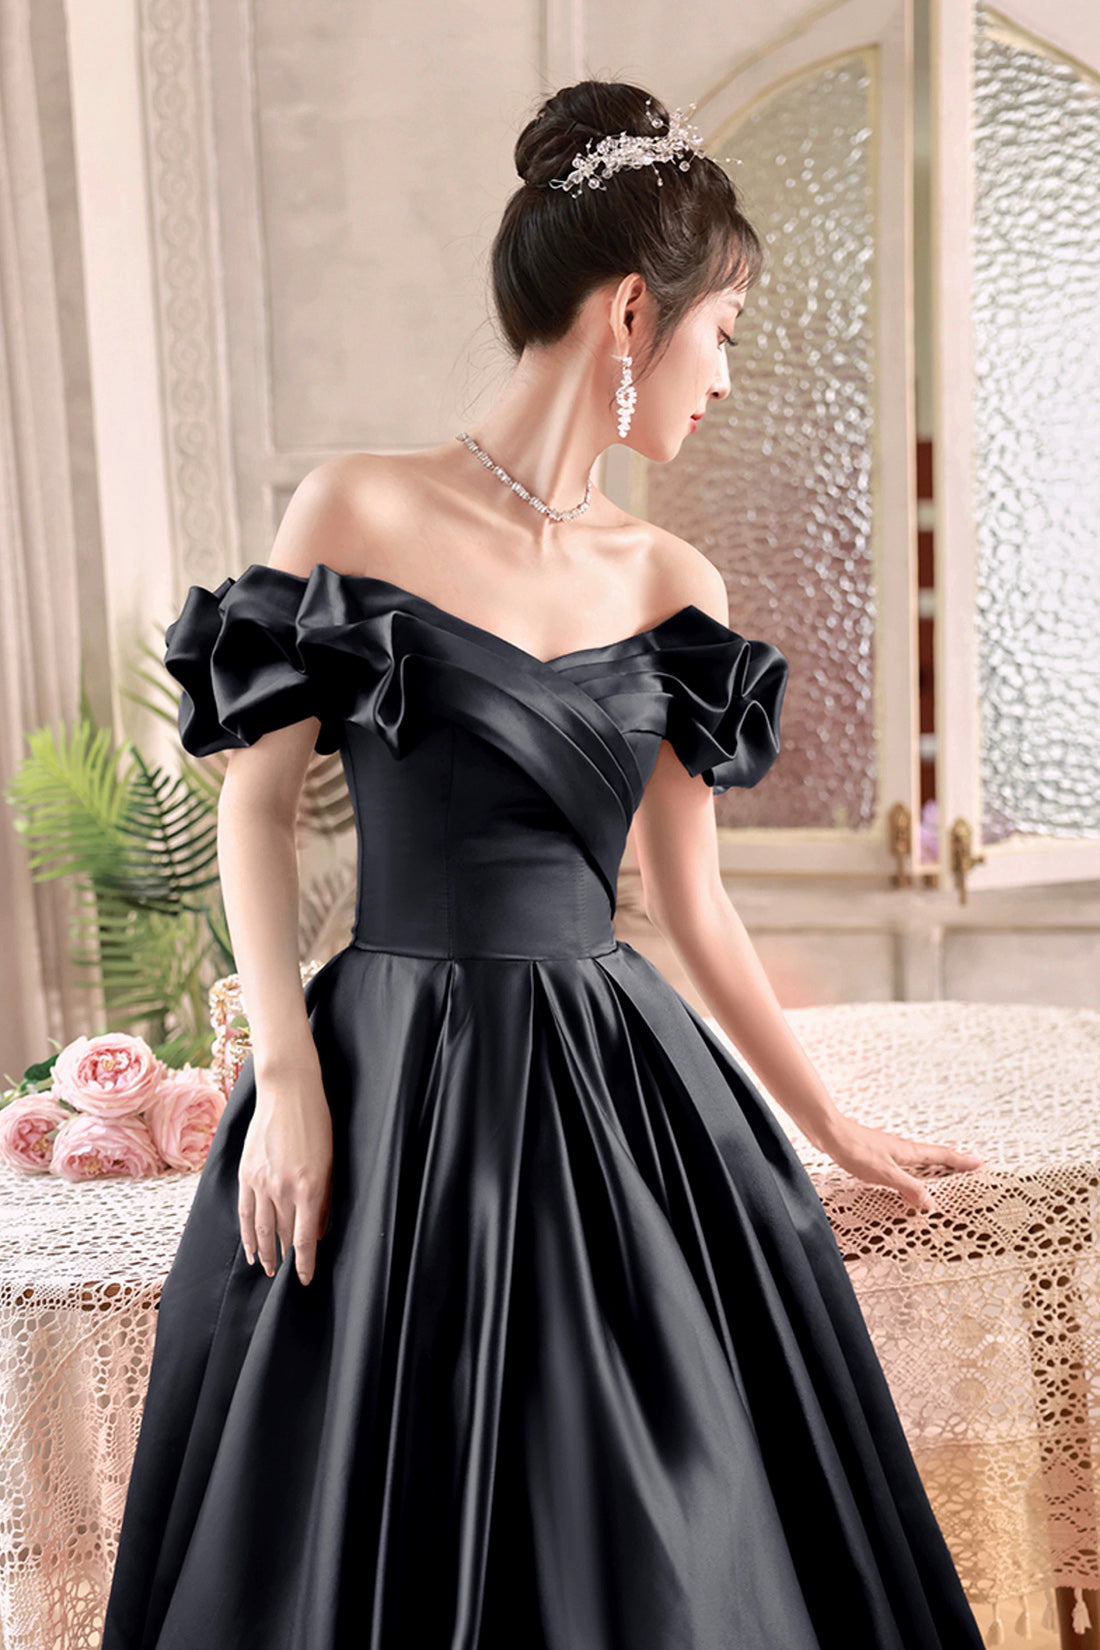 Modern Ball Gown Satin Floor-length Sleeveless Evening Dress with Ruching -  UCenter Dress